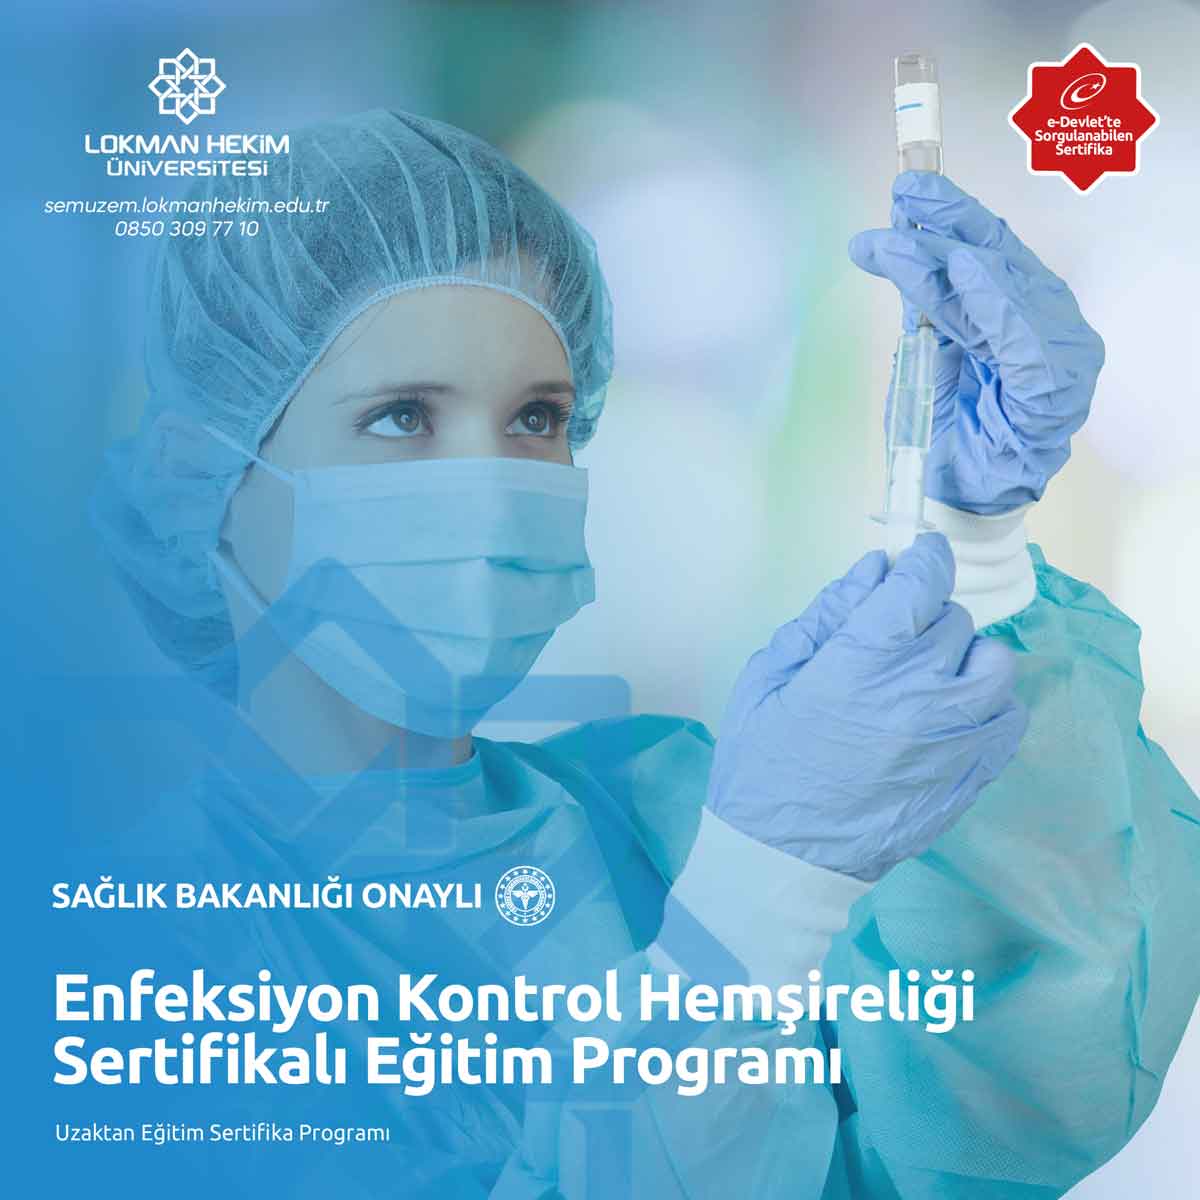 Enfeksiyon Kontrol Hemşireliği Sertifikalı Eğitim Programı